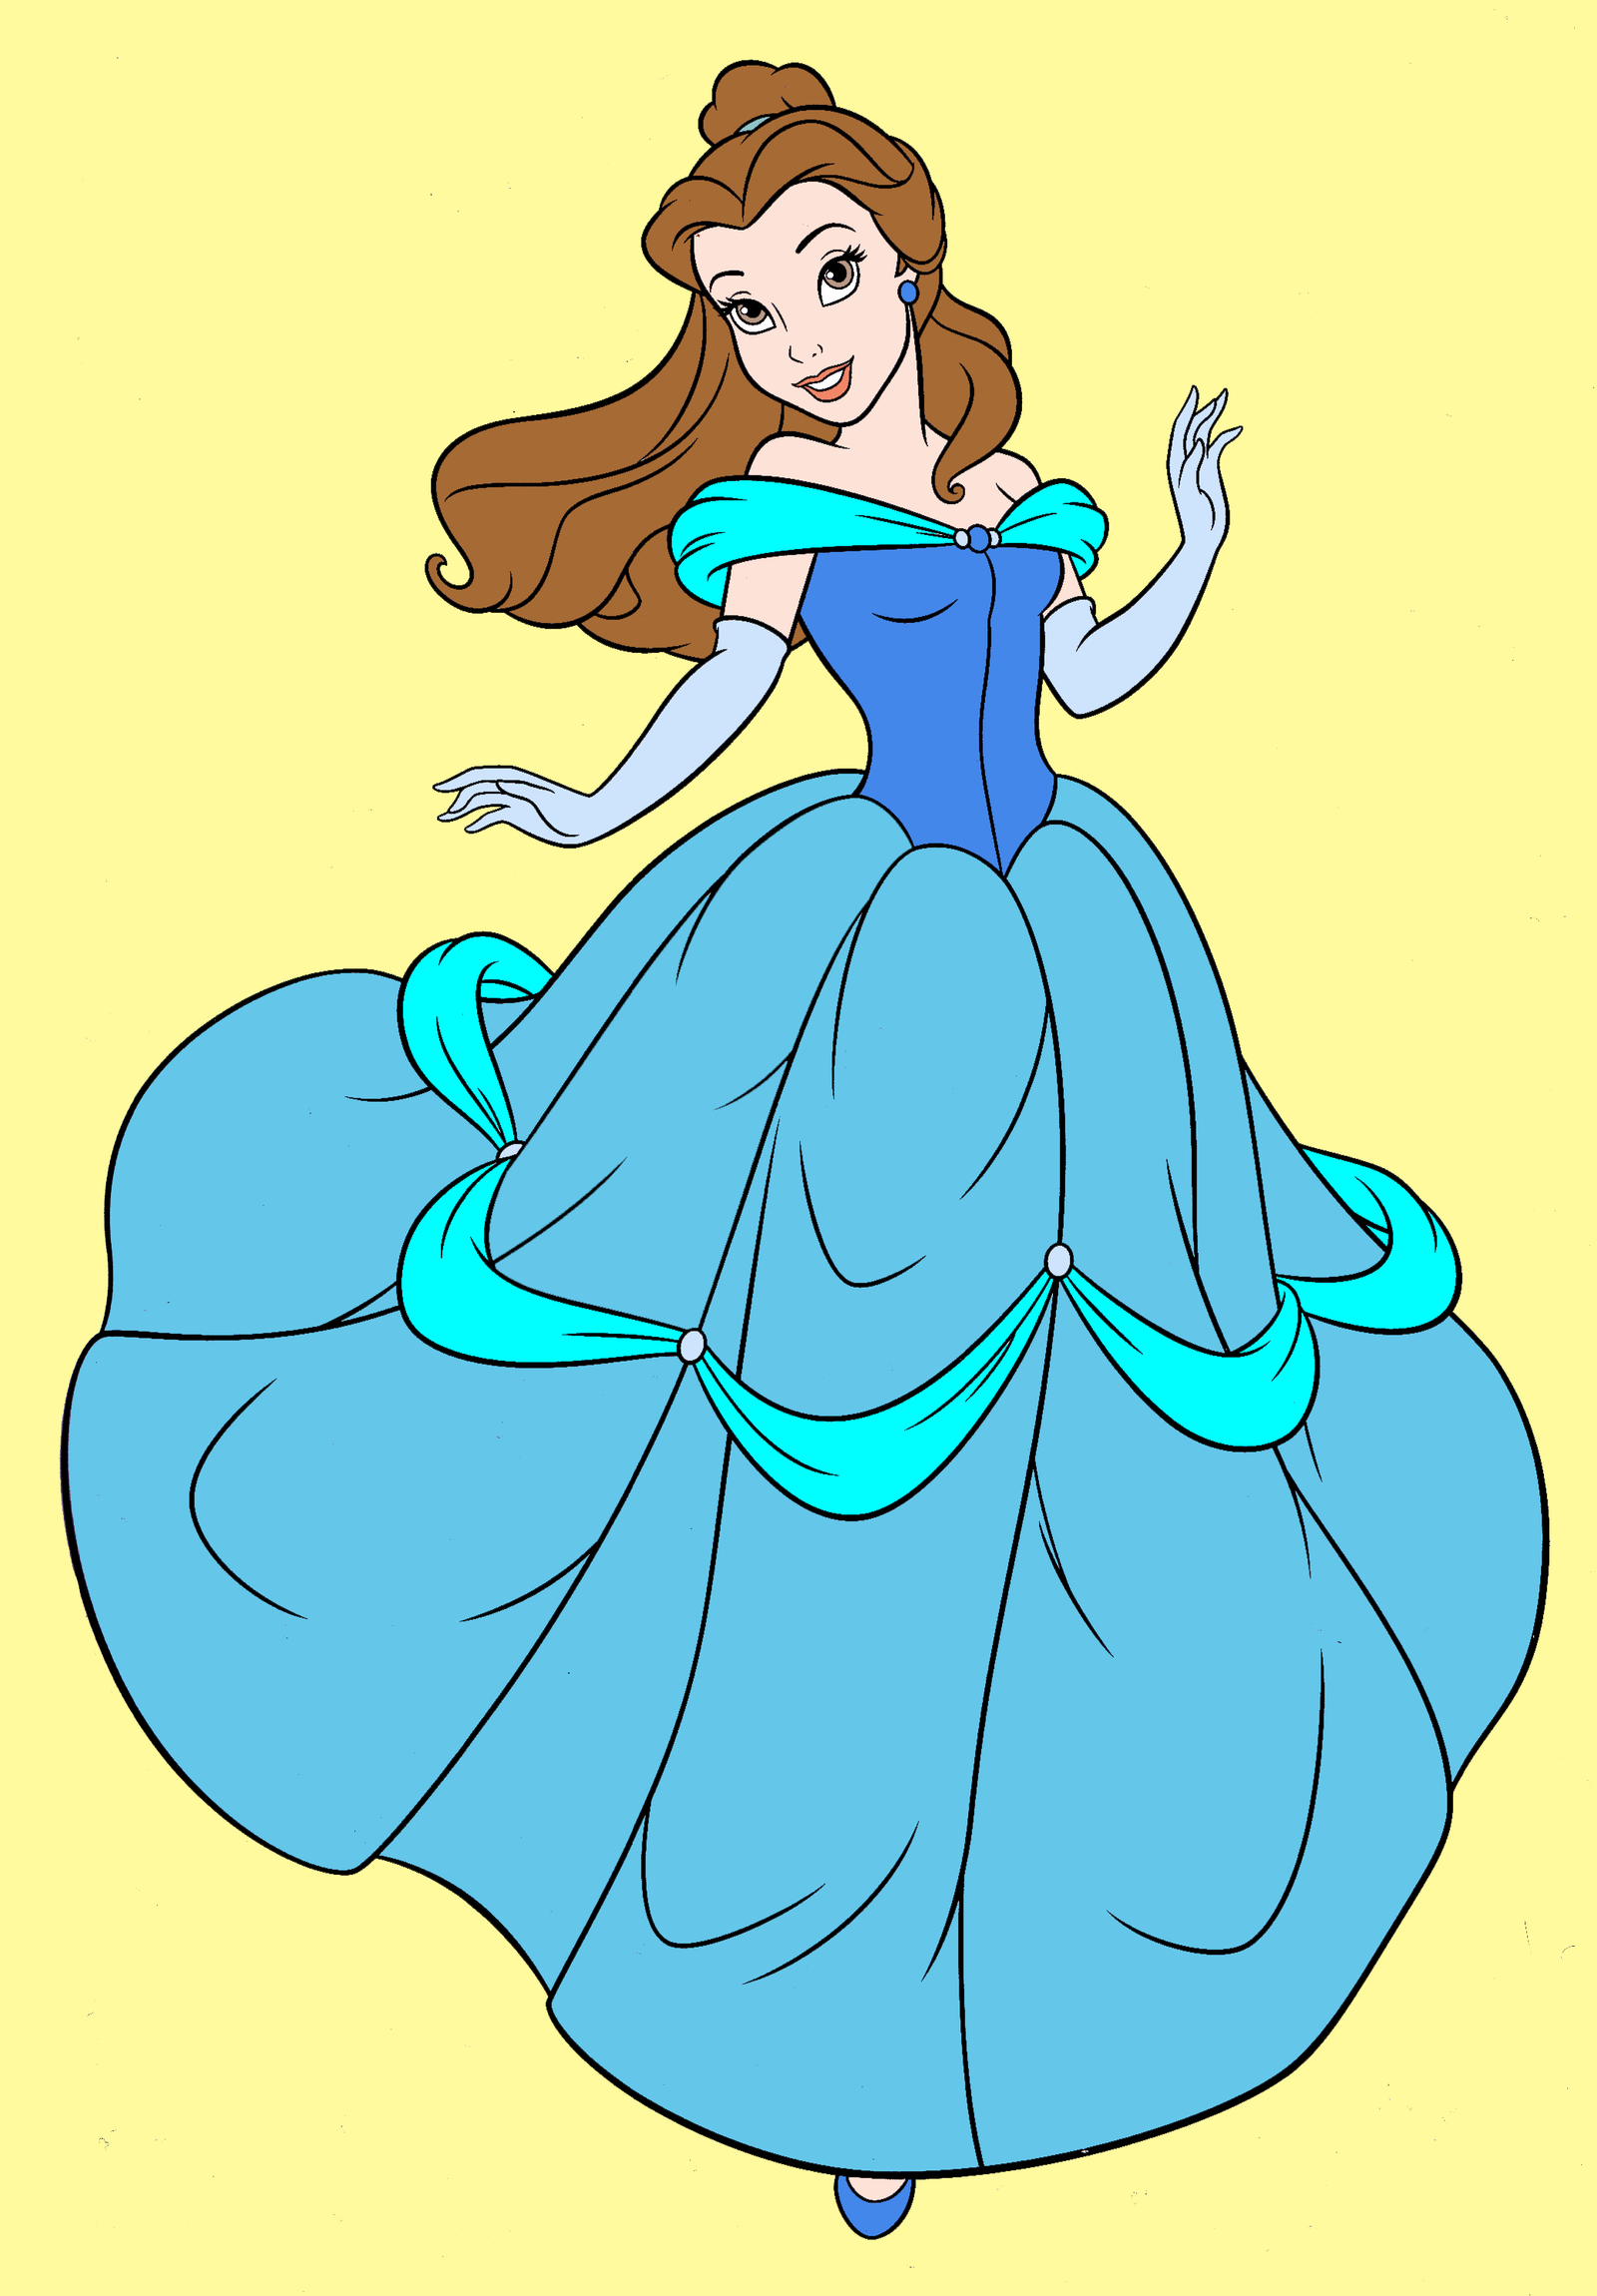 Belle in her Blue dress by Zanny-Marie on DeviantArt